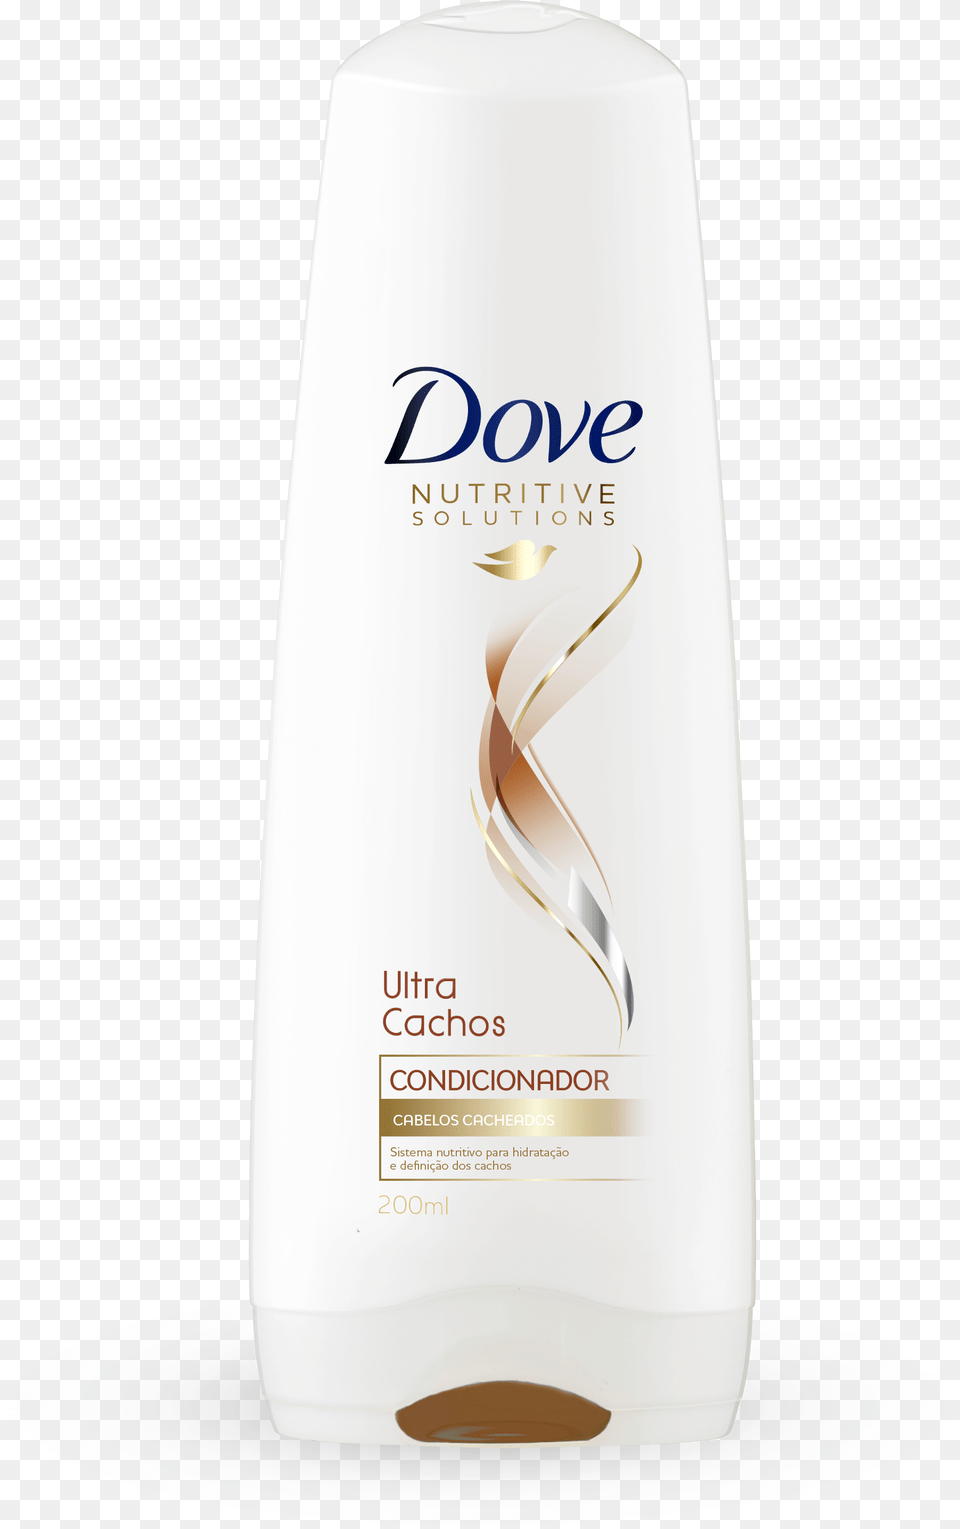 Condicionador Dove Ultra Cachos 200ml Dove Conditioner Label, Bottle, Shampoo, Lotion, Shaker Png Image